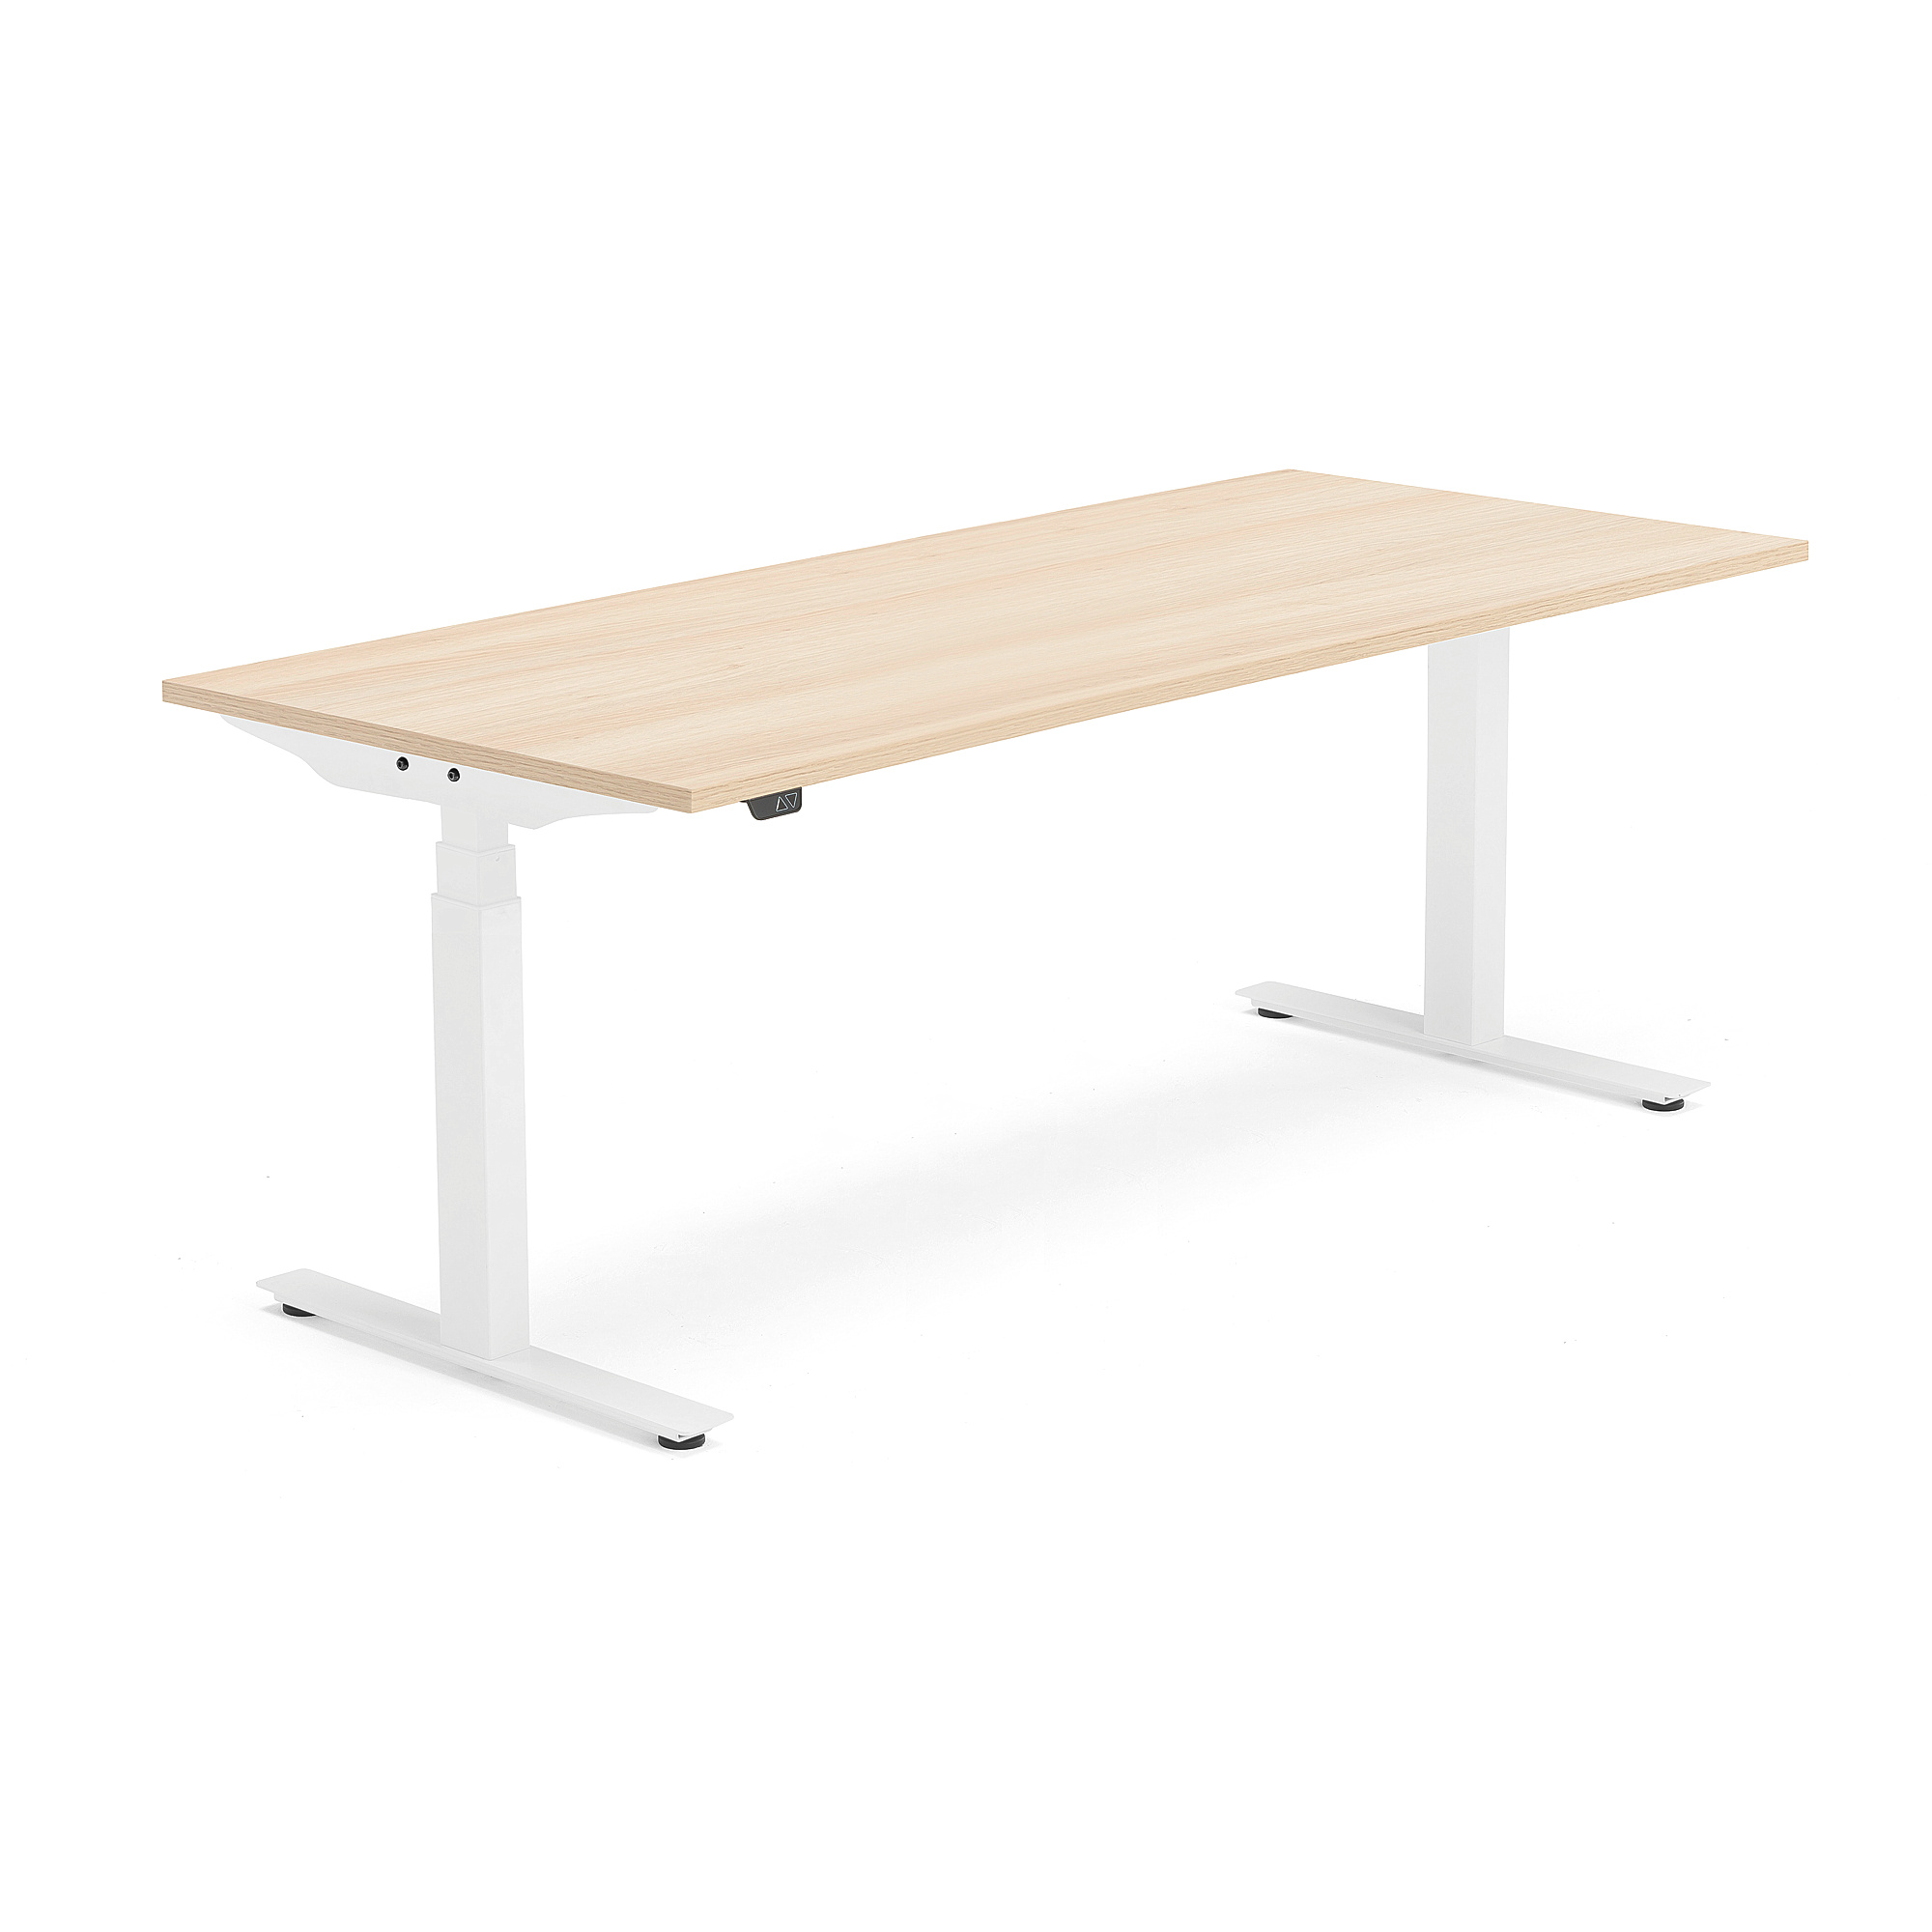 Výškově nastavitelný stůl MODULUS, 1800x800 mm, bílý rám, dub